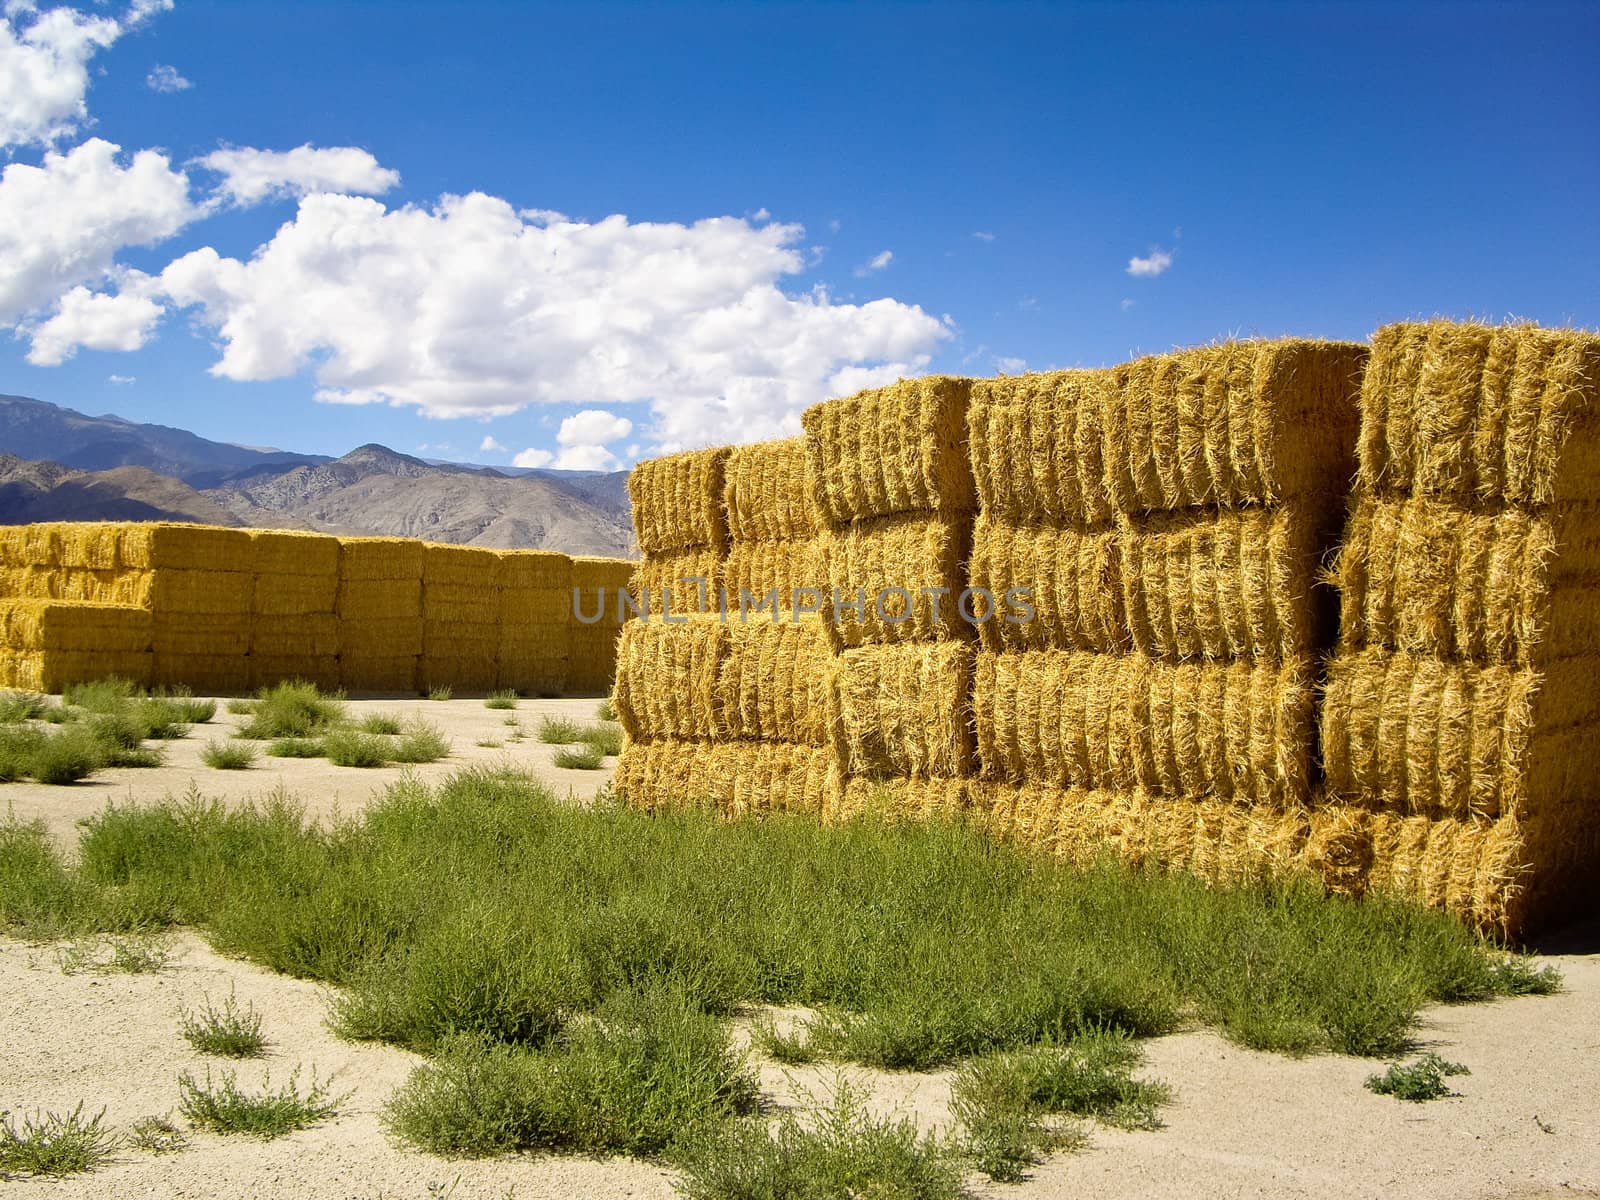 Haystacks in the high desert by emattil